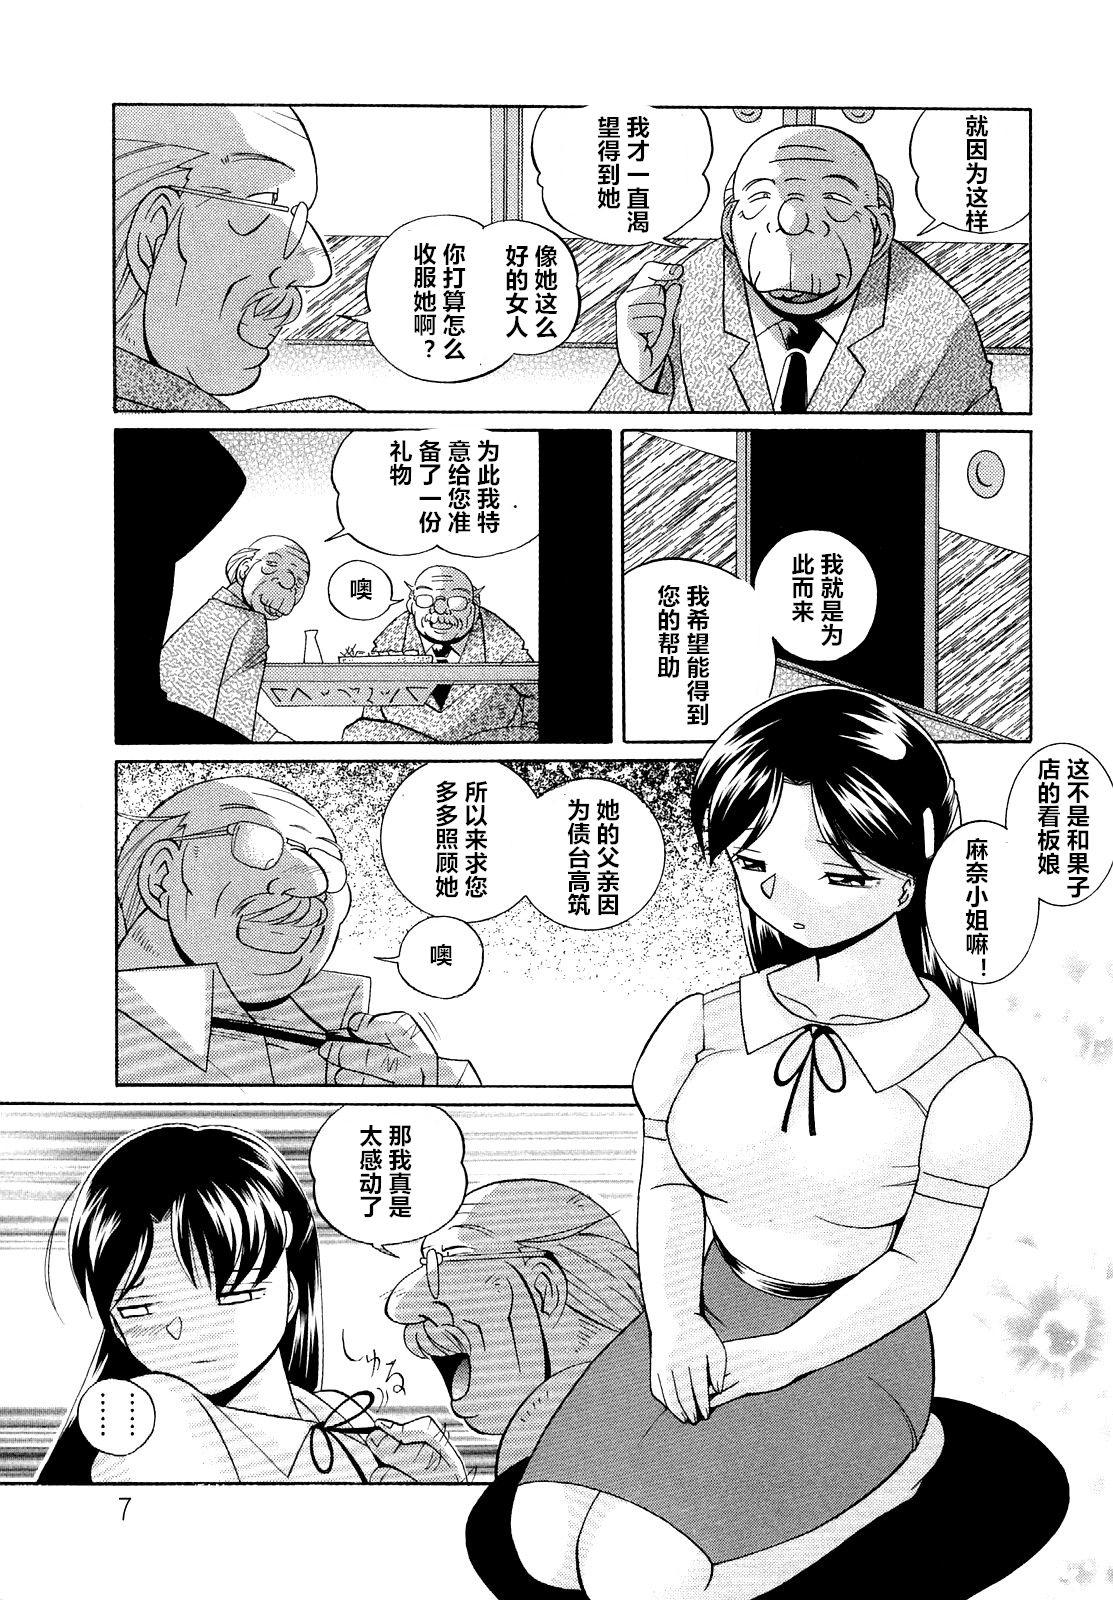 Bunduda Shoushou Ruten ch.1 Stud - Page 7